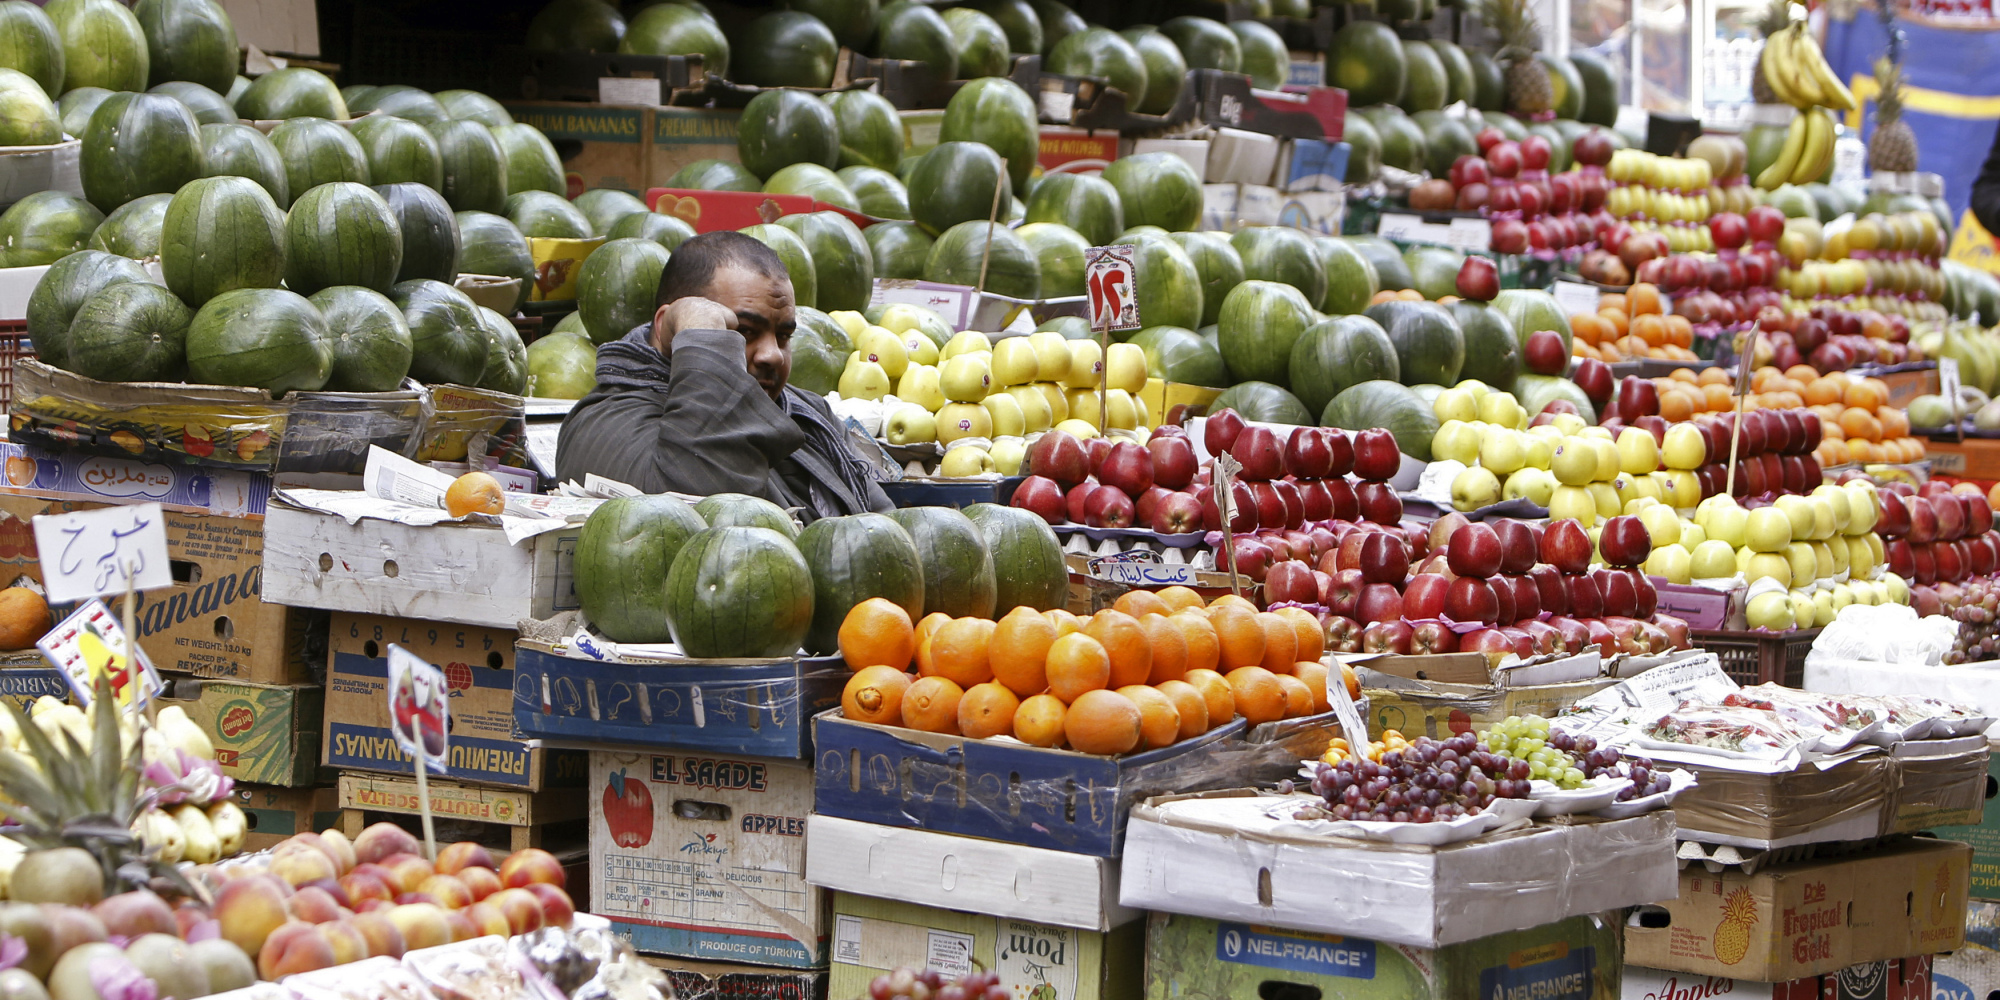   خطة الحكومة لخفض أسعار الخضروات والفاكهة بنسبة 30%